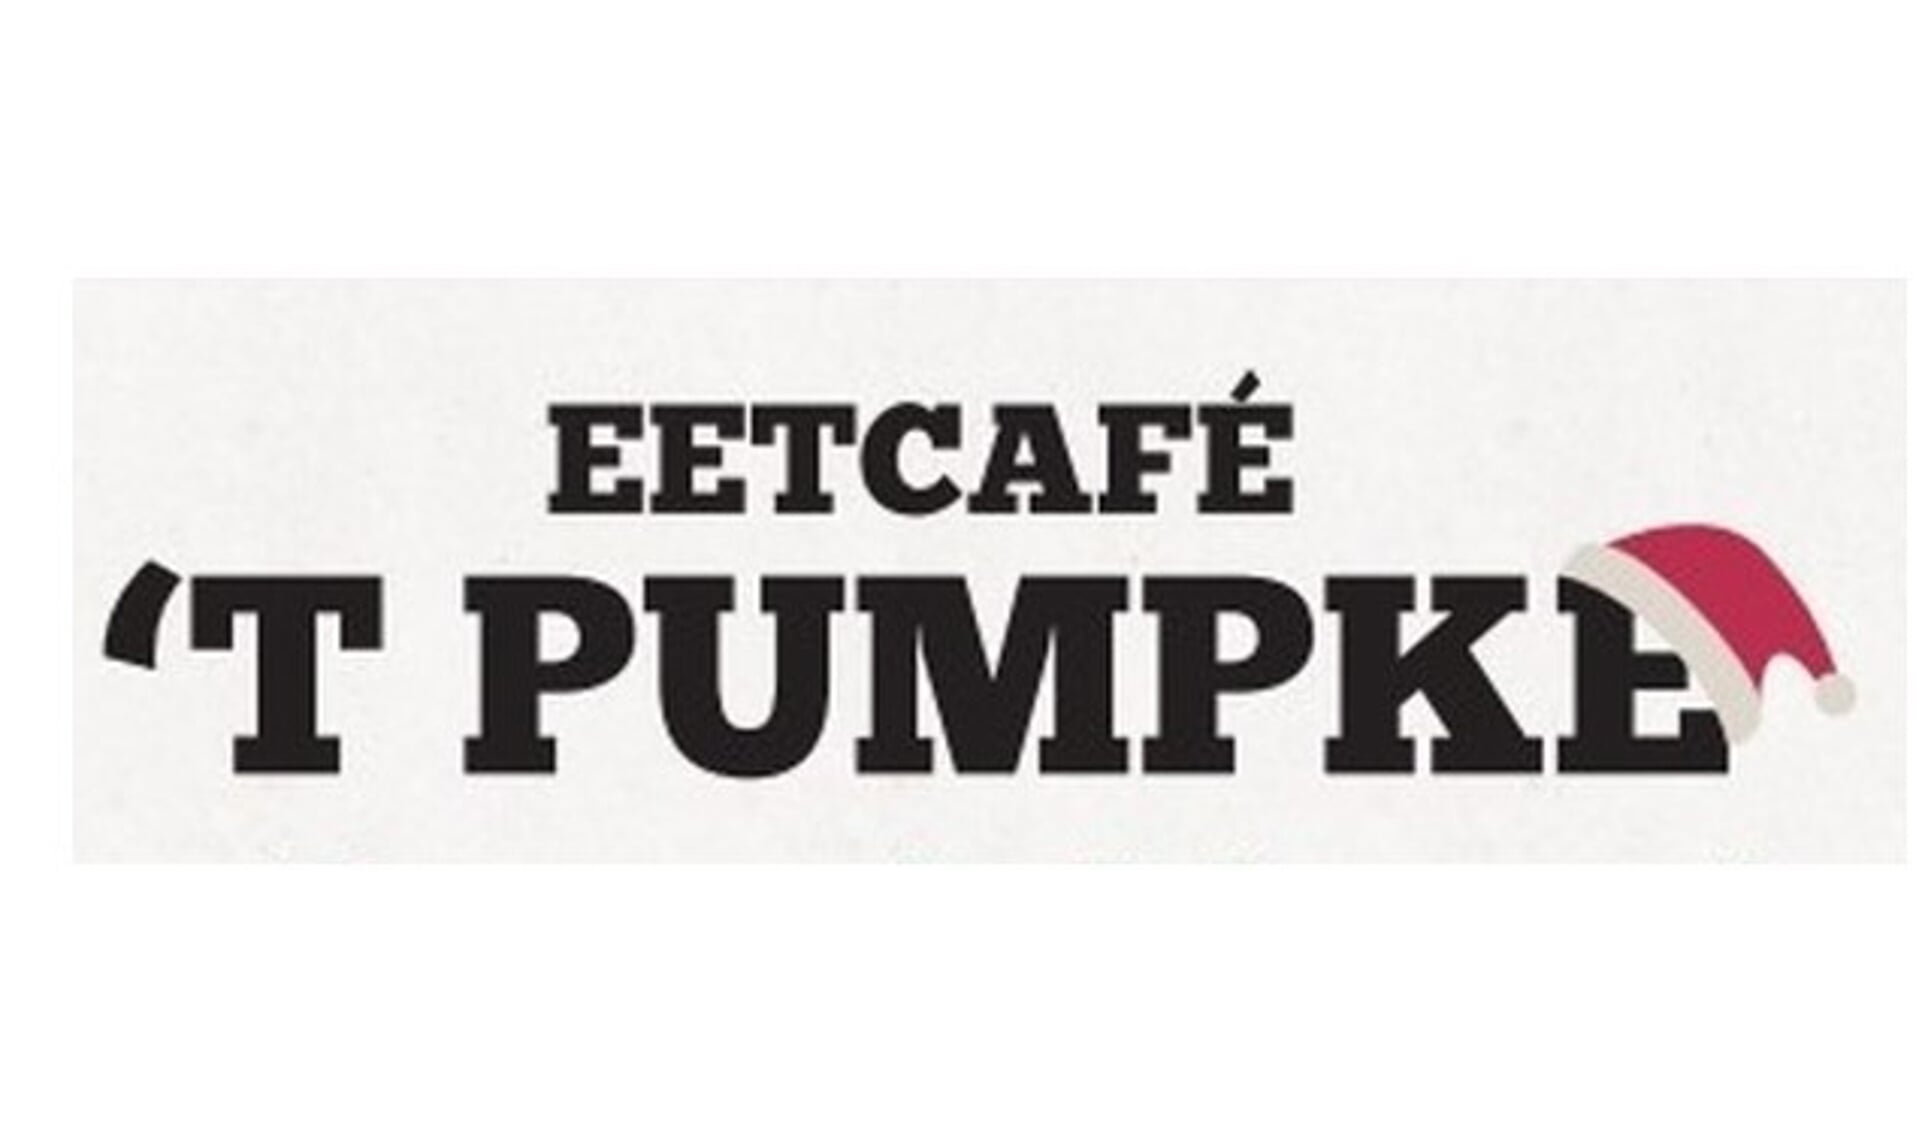 Eetcafe ’t Pumpke maakt het gemakkelijk met afhaal kerstmenu